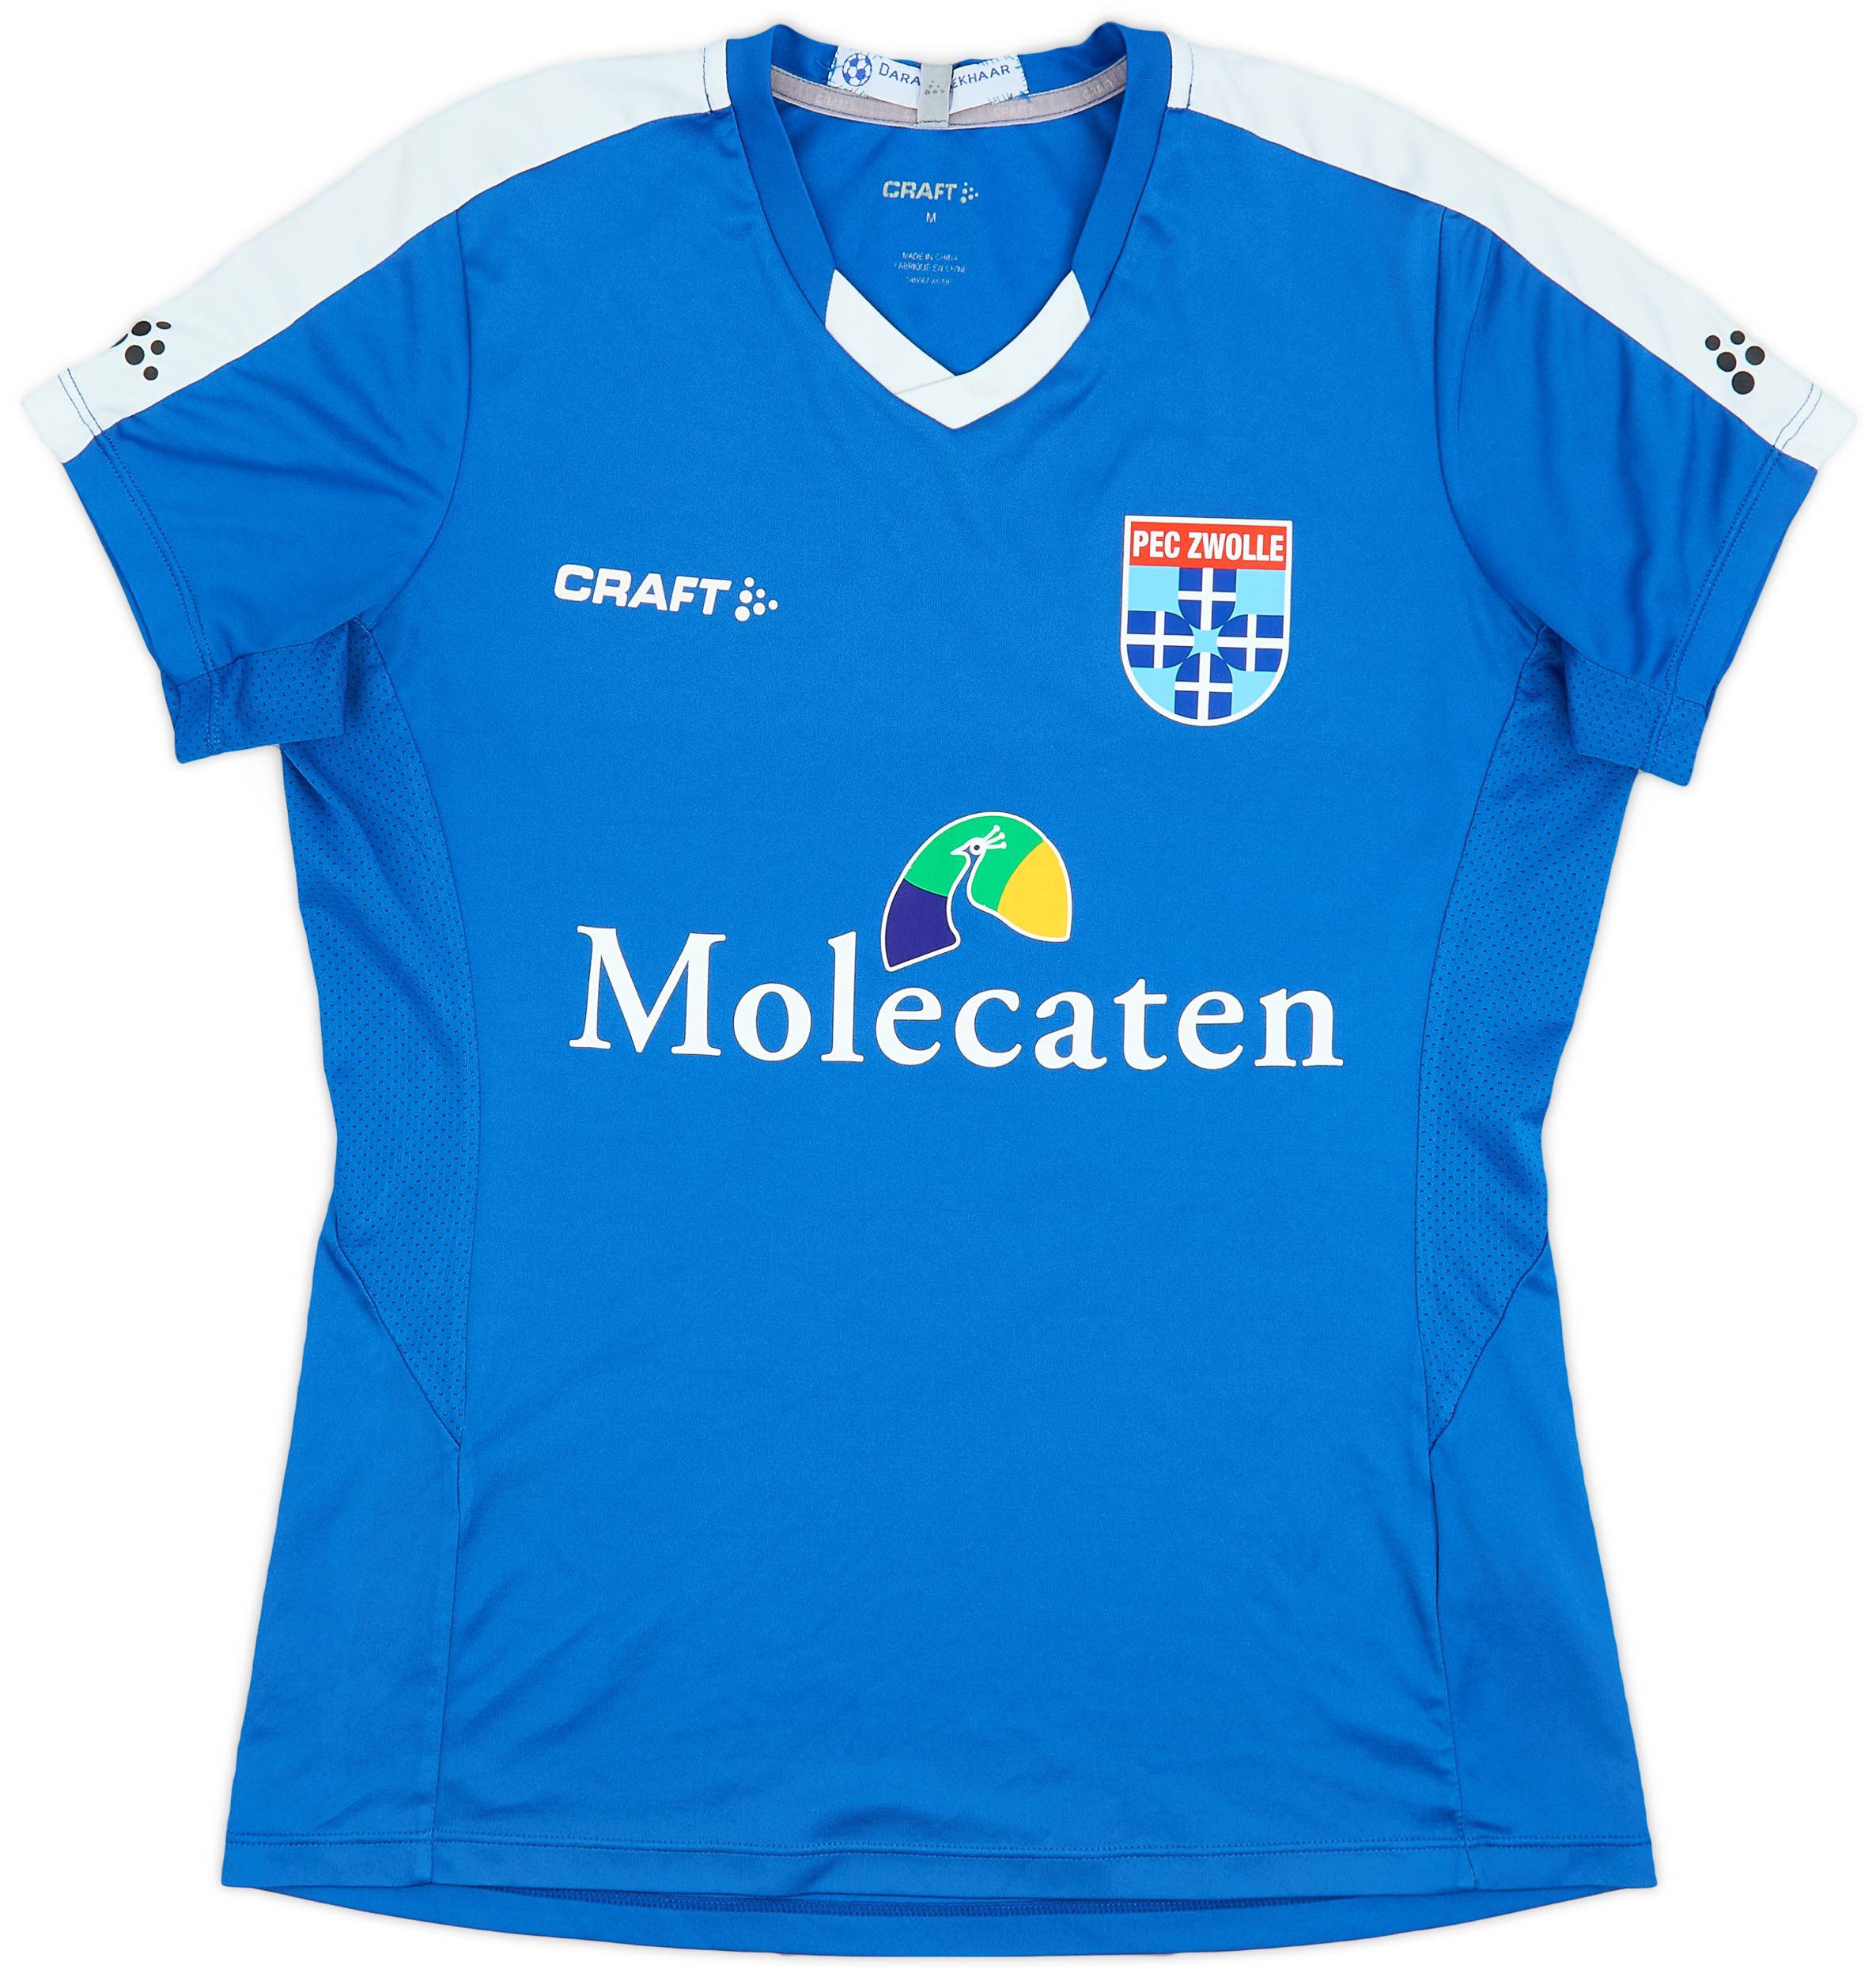 2019-20 PEC Zwolle Craft Training Shirt - 7/10 - (Women's M)